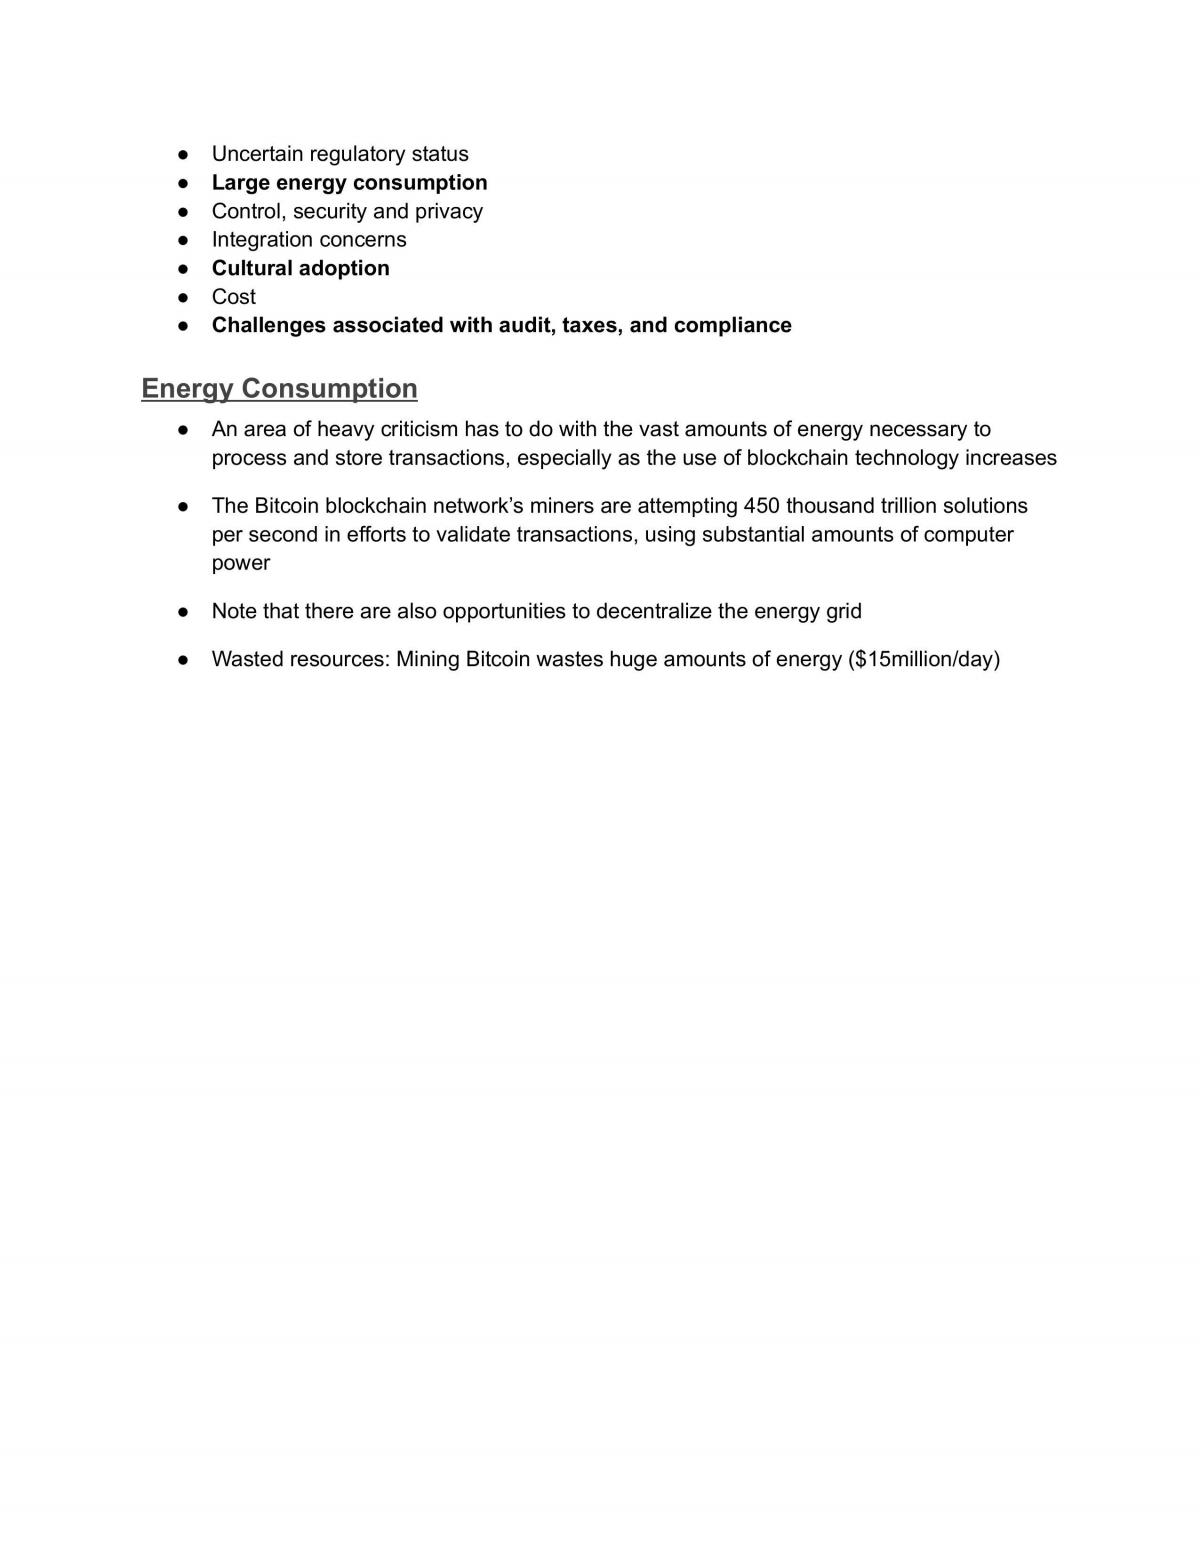 COMP1800 - Unit Study Notes - Page 21